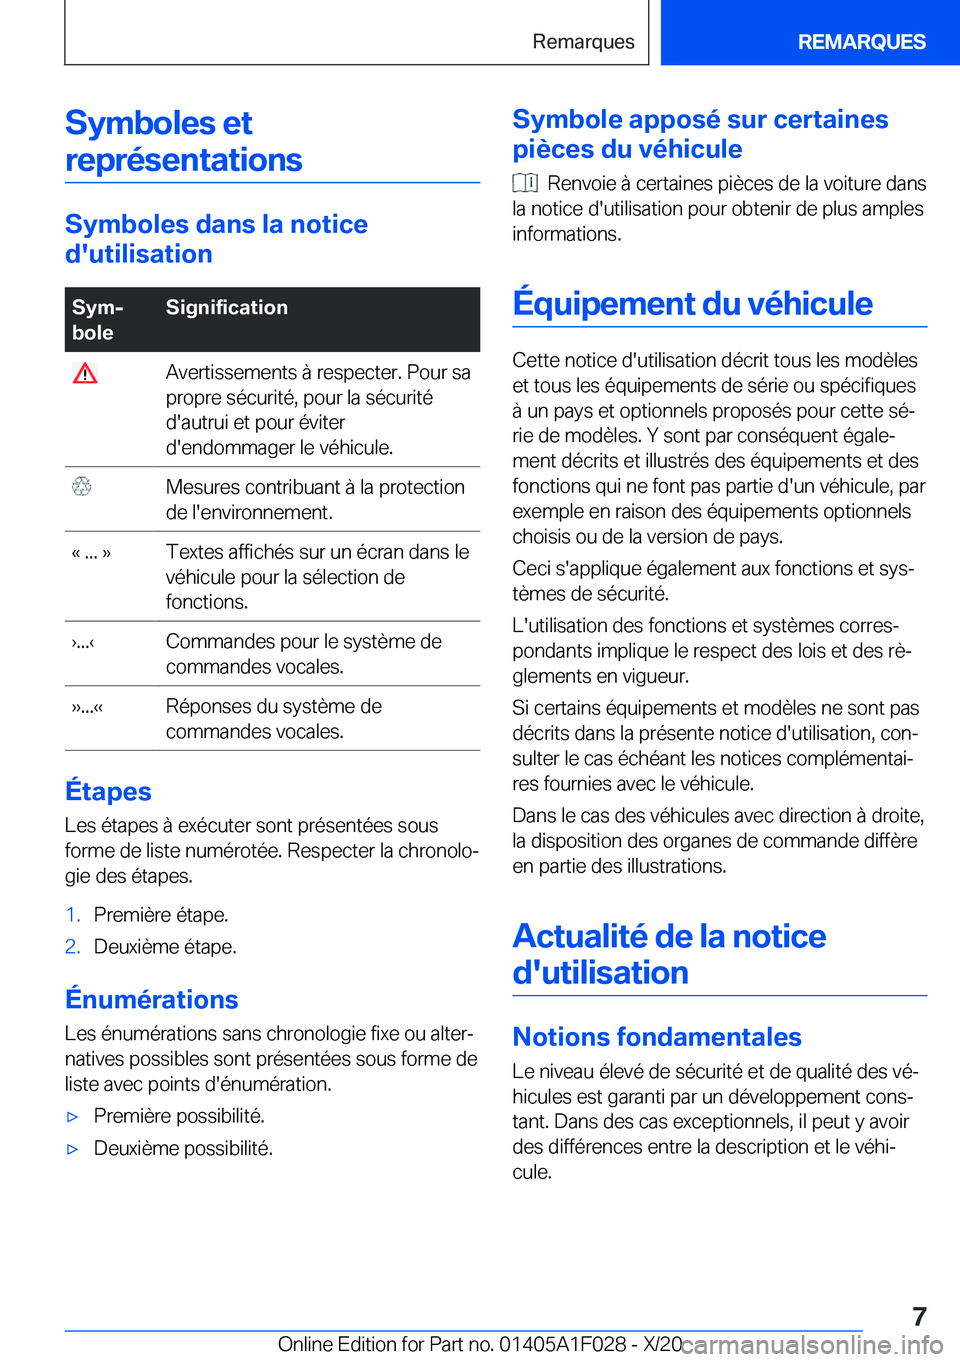 BMW X1 2021  Notices Demploi (in French) �S�y�m�b�o�l�e�s��e�t�r�e�p�r�é�s�e�n�t�a�t�i�o�n�s
�S�y�m�b�o�l�e�s��d�a�n�s��l�a��n�o�t�i�c�e
�d�'�u�t�i�l�i�s�a�t�i�o�n
�S�y�mj
�b�o�l�e�S�i�g�n�i�f�i�c�a�t�i�o�n��A�v�e�r�t�i�s�s�e�m�e�